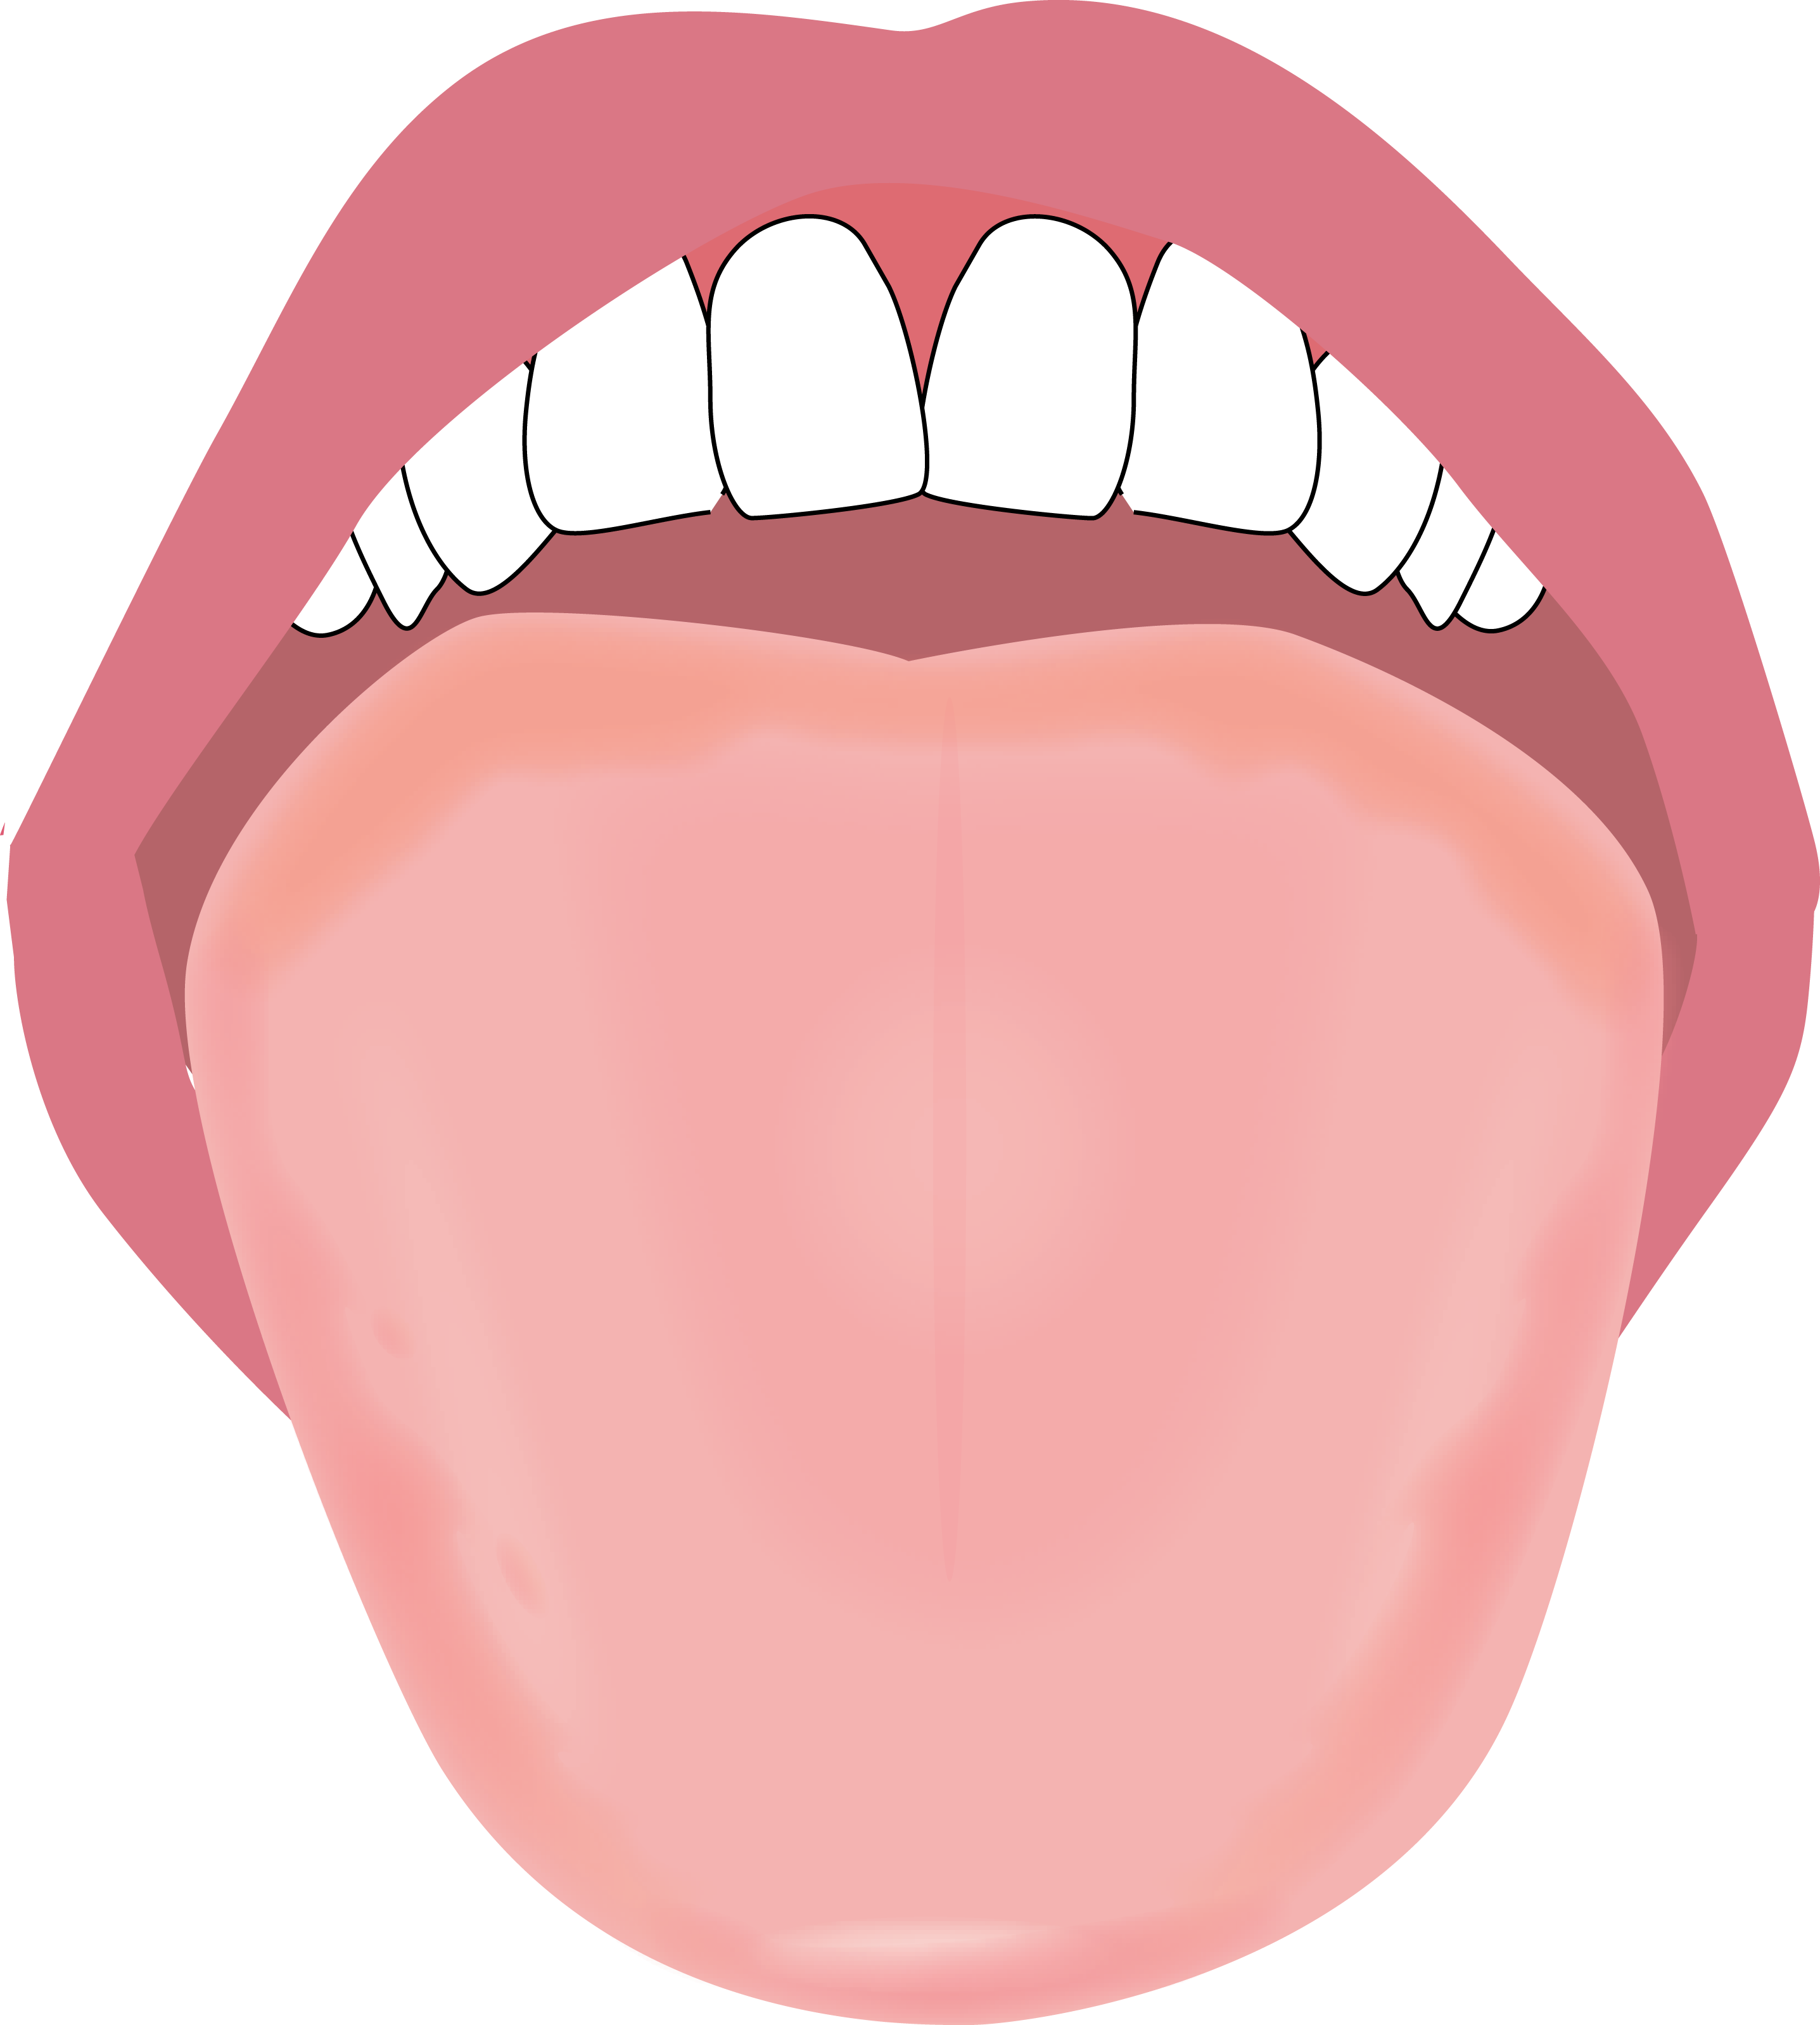 舌のイラスト描きました やましろ歯科口腔外科 口腔外科 口腔内科 福岡で親知らずの抜歯 ドライマウス 睡眠時無呼吸症候群 口腔がん健診のことならやま しろ歯科口腔外科へ 日本口腔外科学会認定専門医が治療します